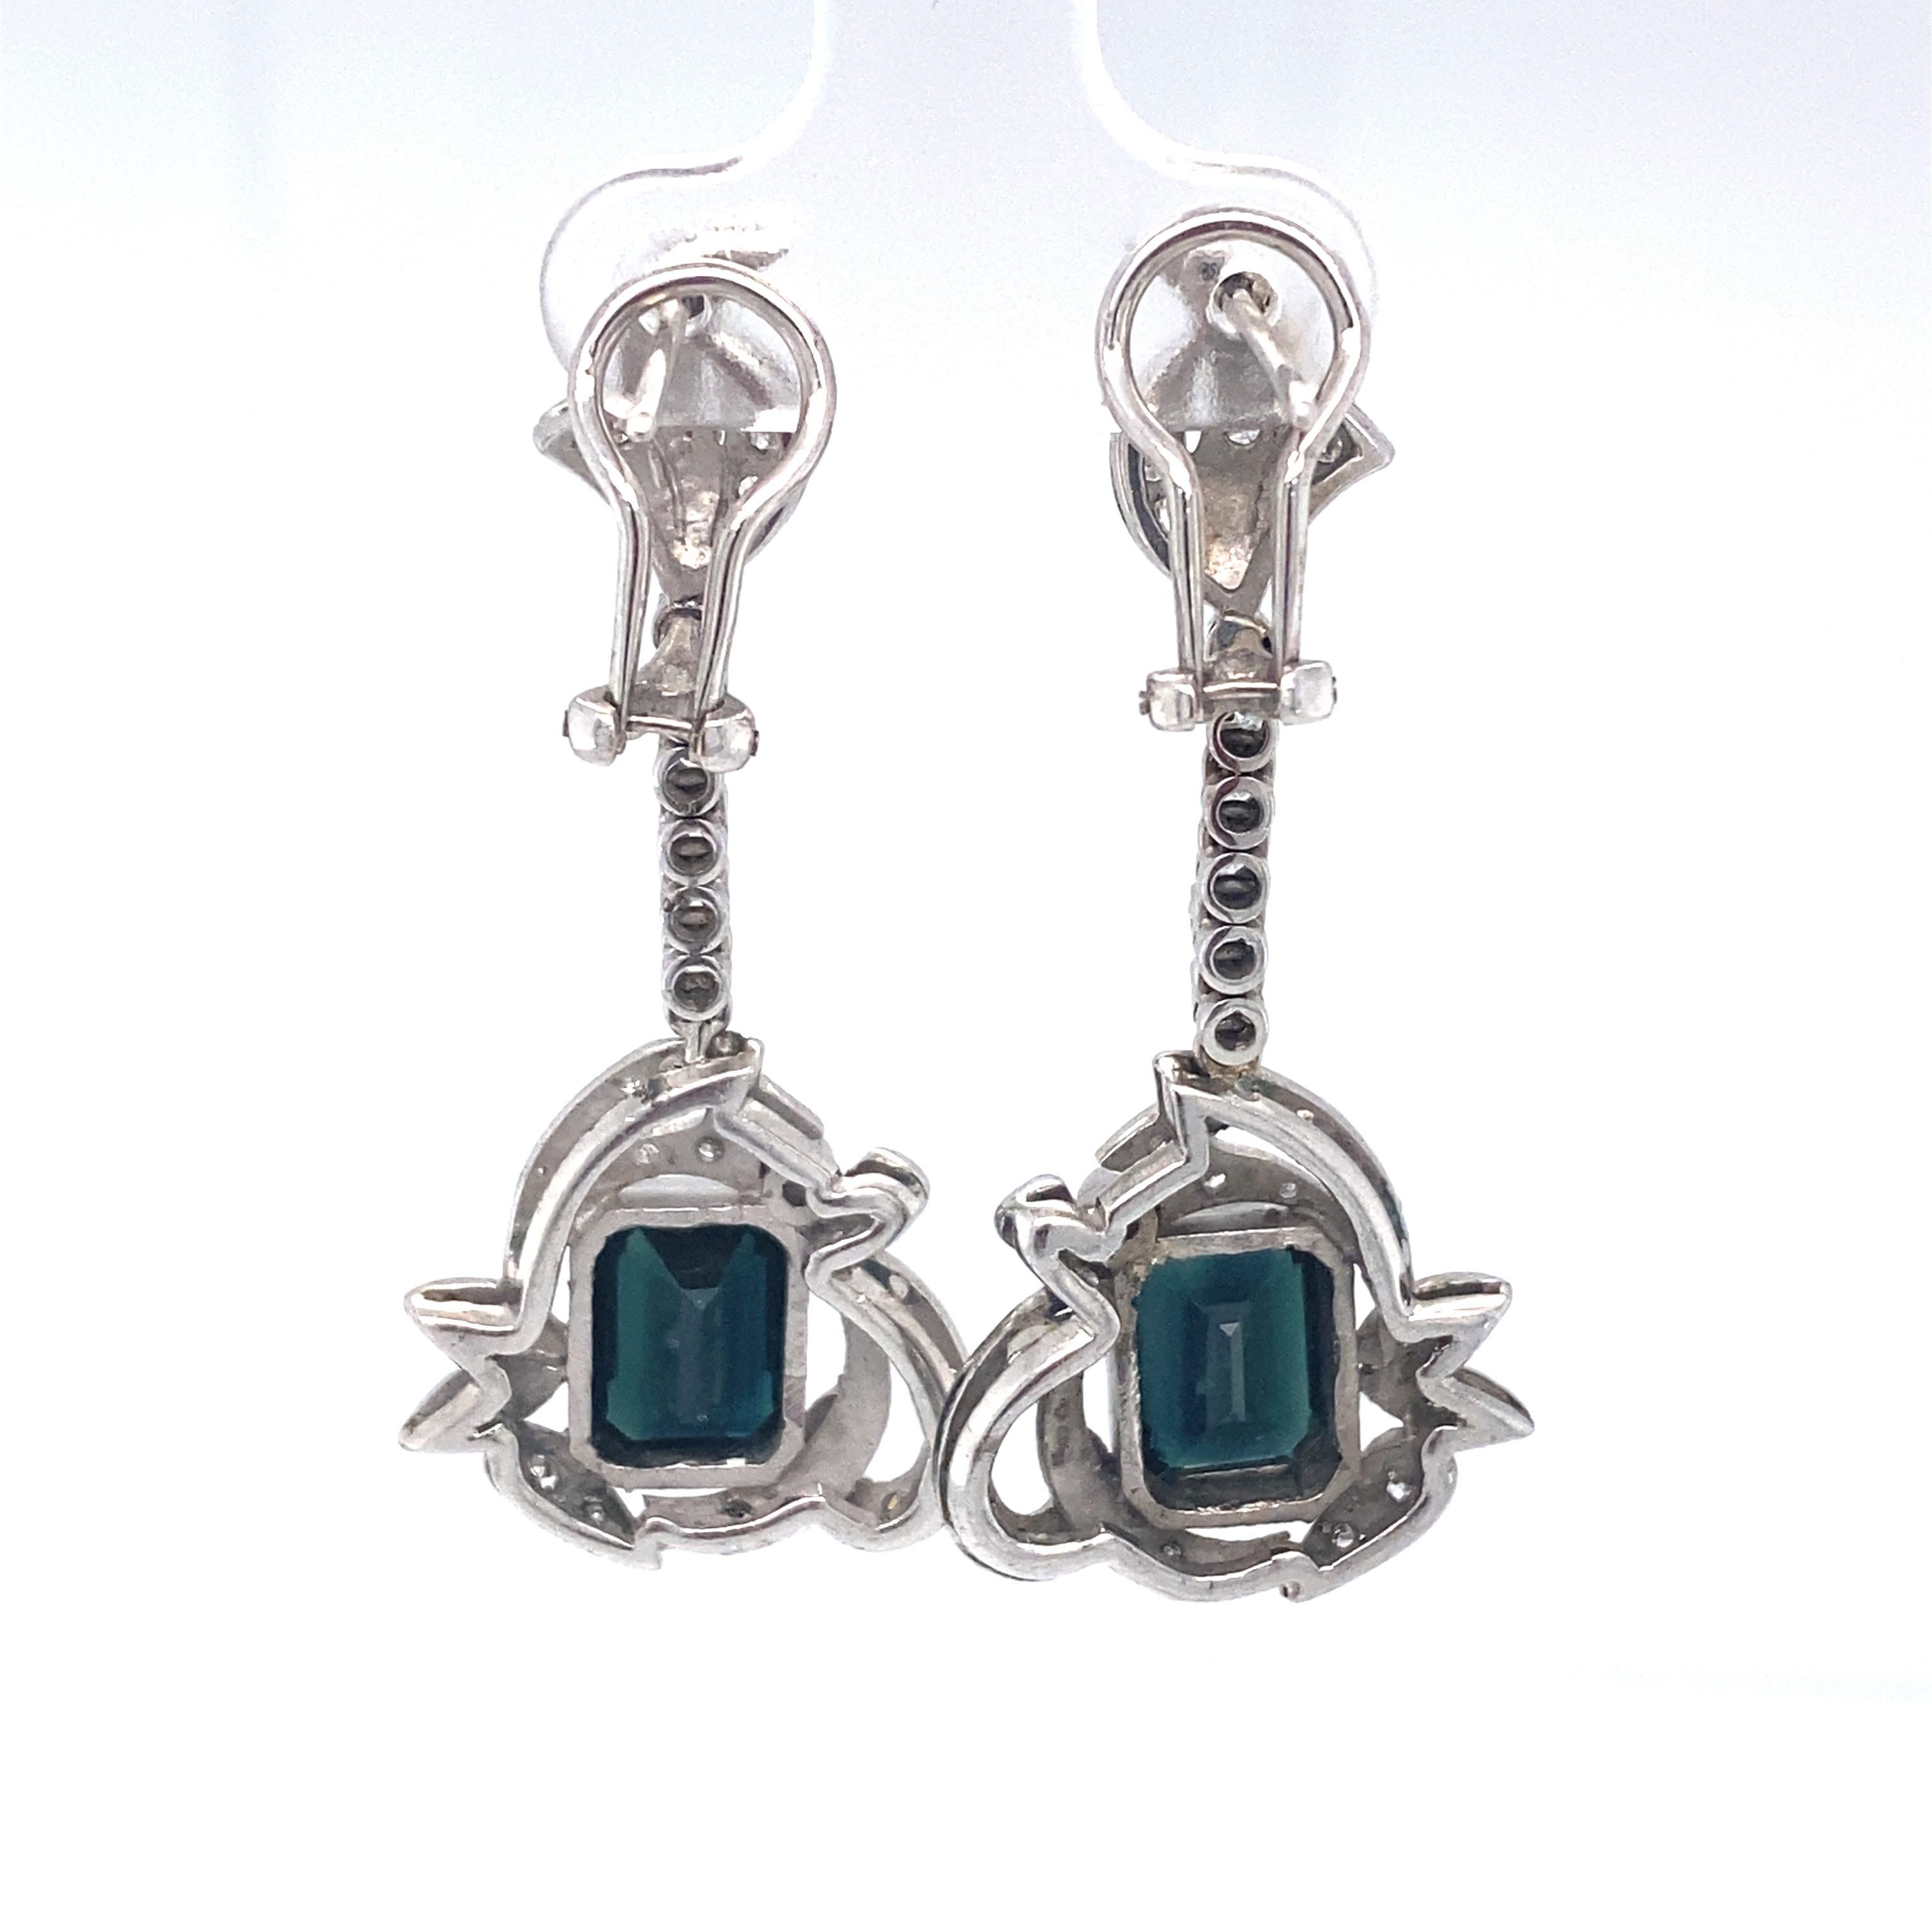 1920s earrings style